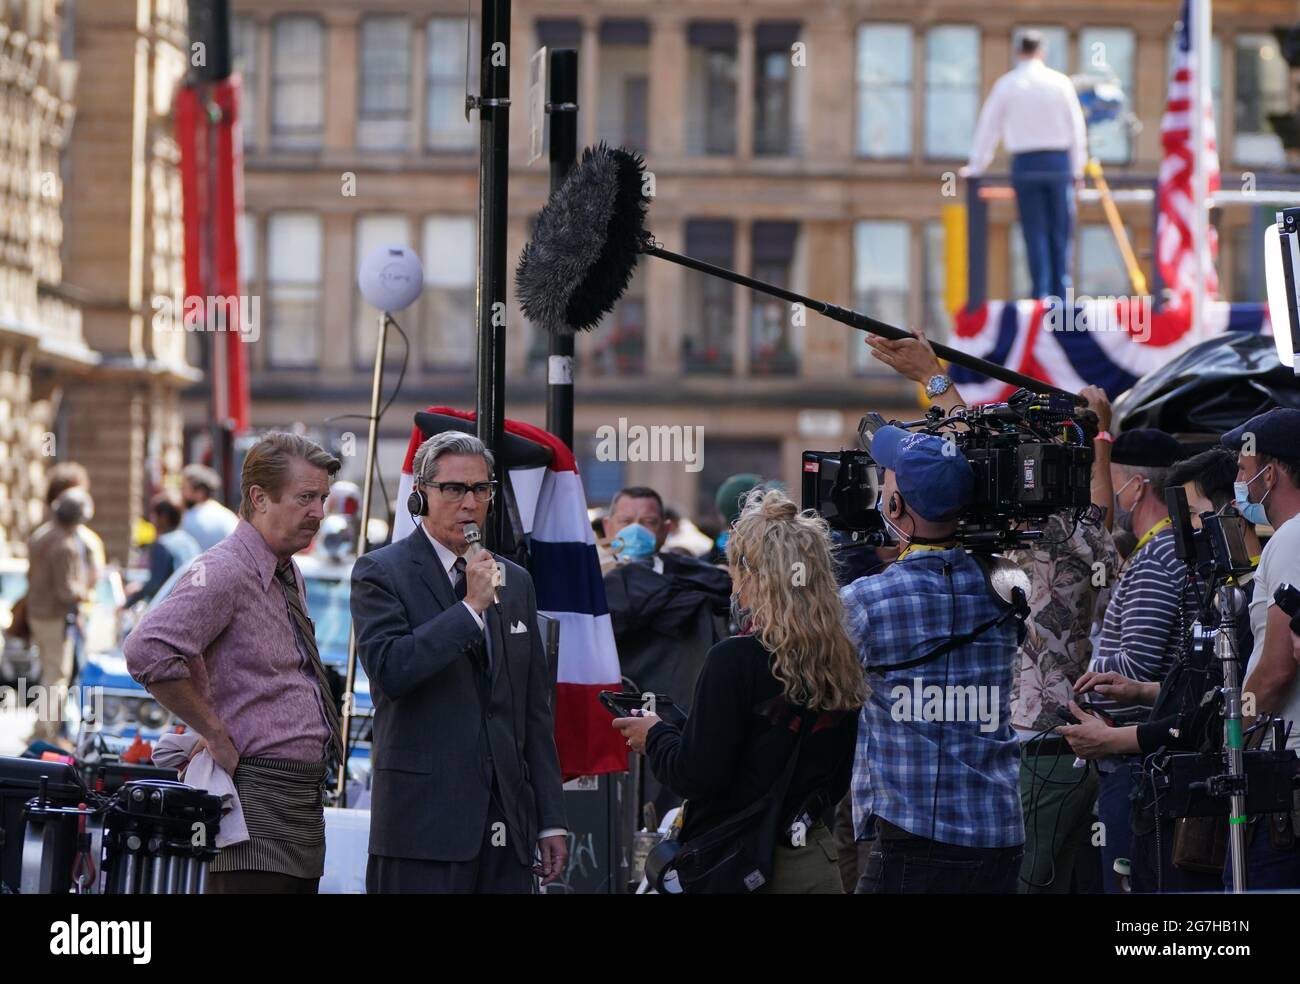 Besetzung der Cochrane Street im Stadtzentrum von Glasgow, nachdem die Dreharbeiten für den vermutlich neuen Indiana Jones 5-Film mit Harrison Ford begonnen hatten. Bilddatum: Mittwoch, 14. Juli 2021. Stockfoto